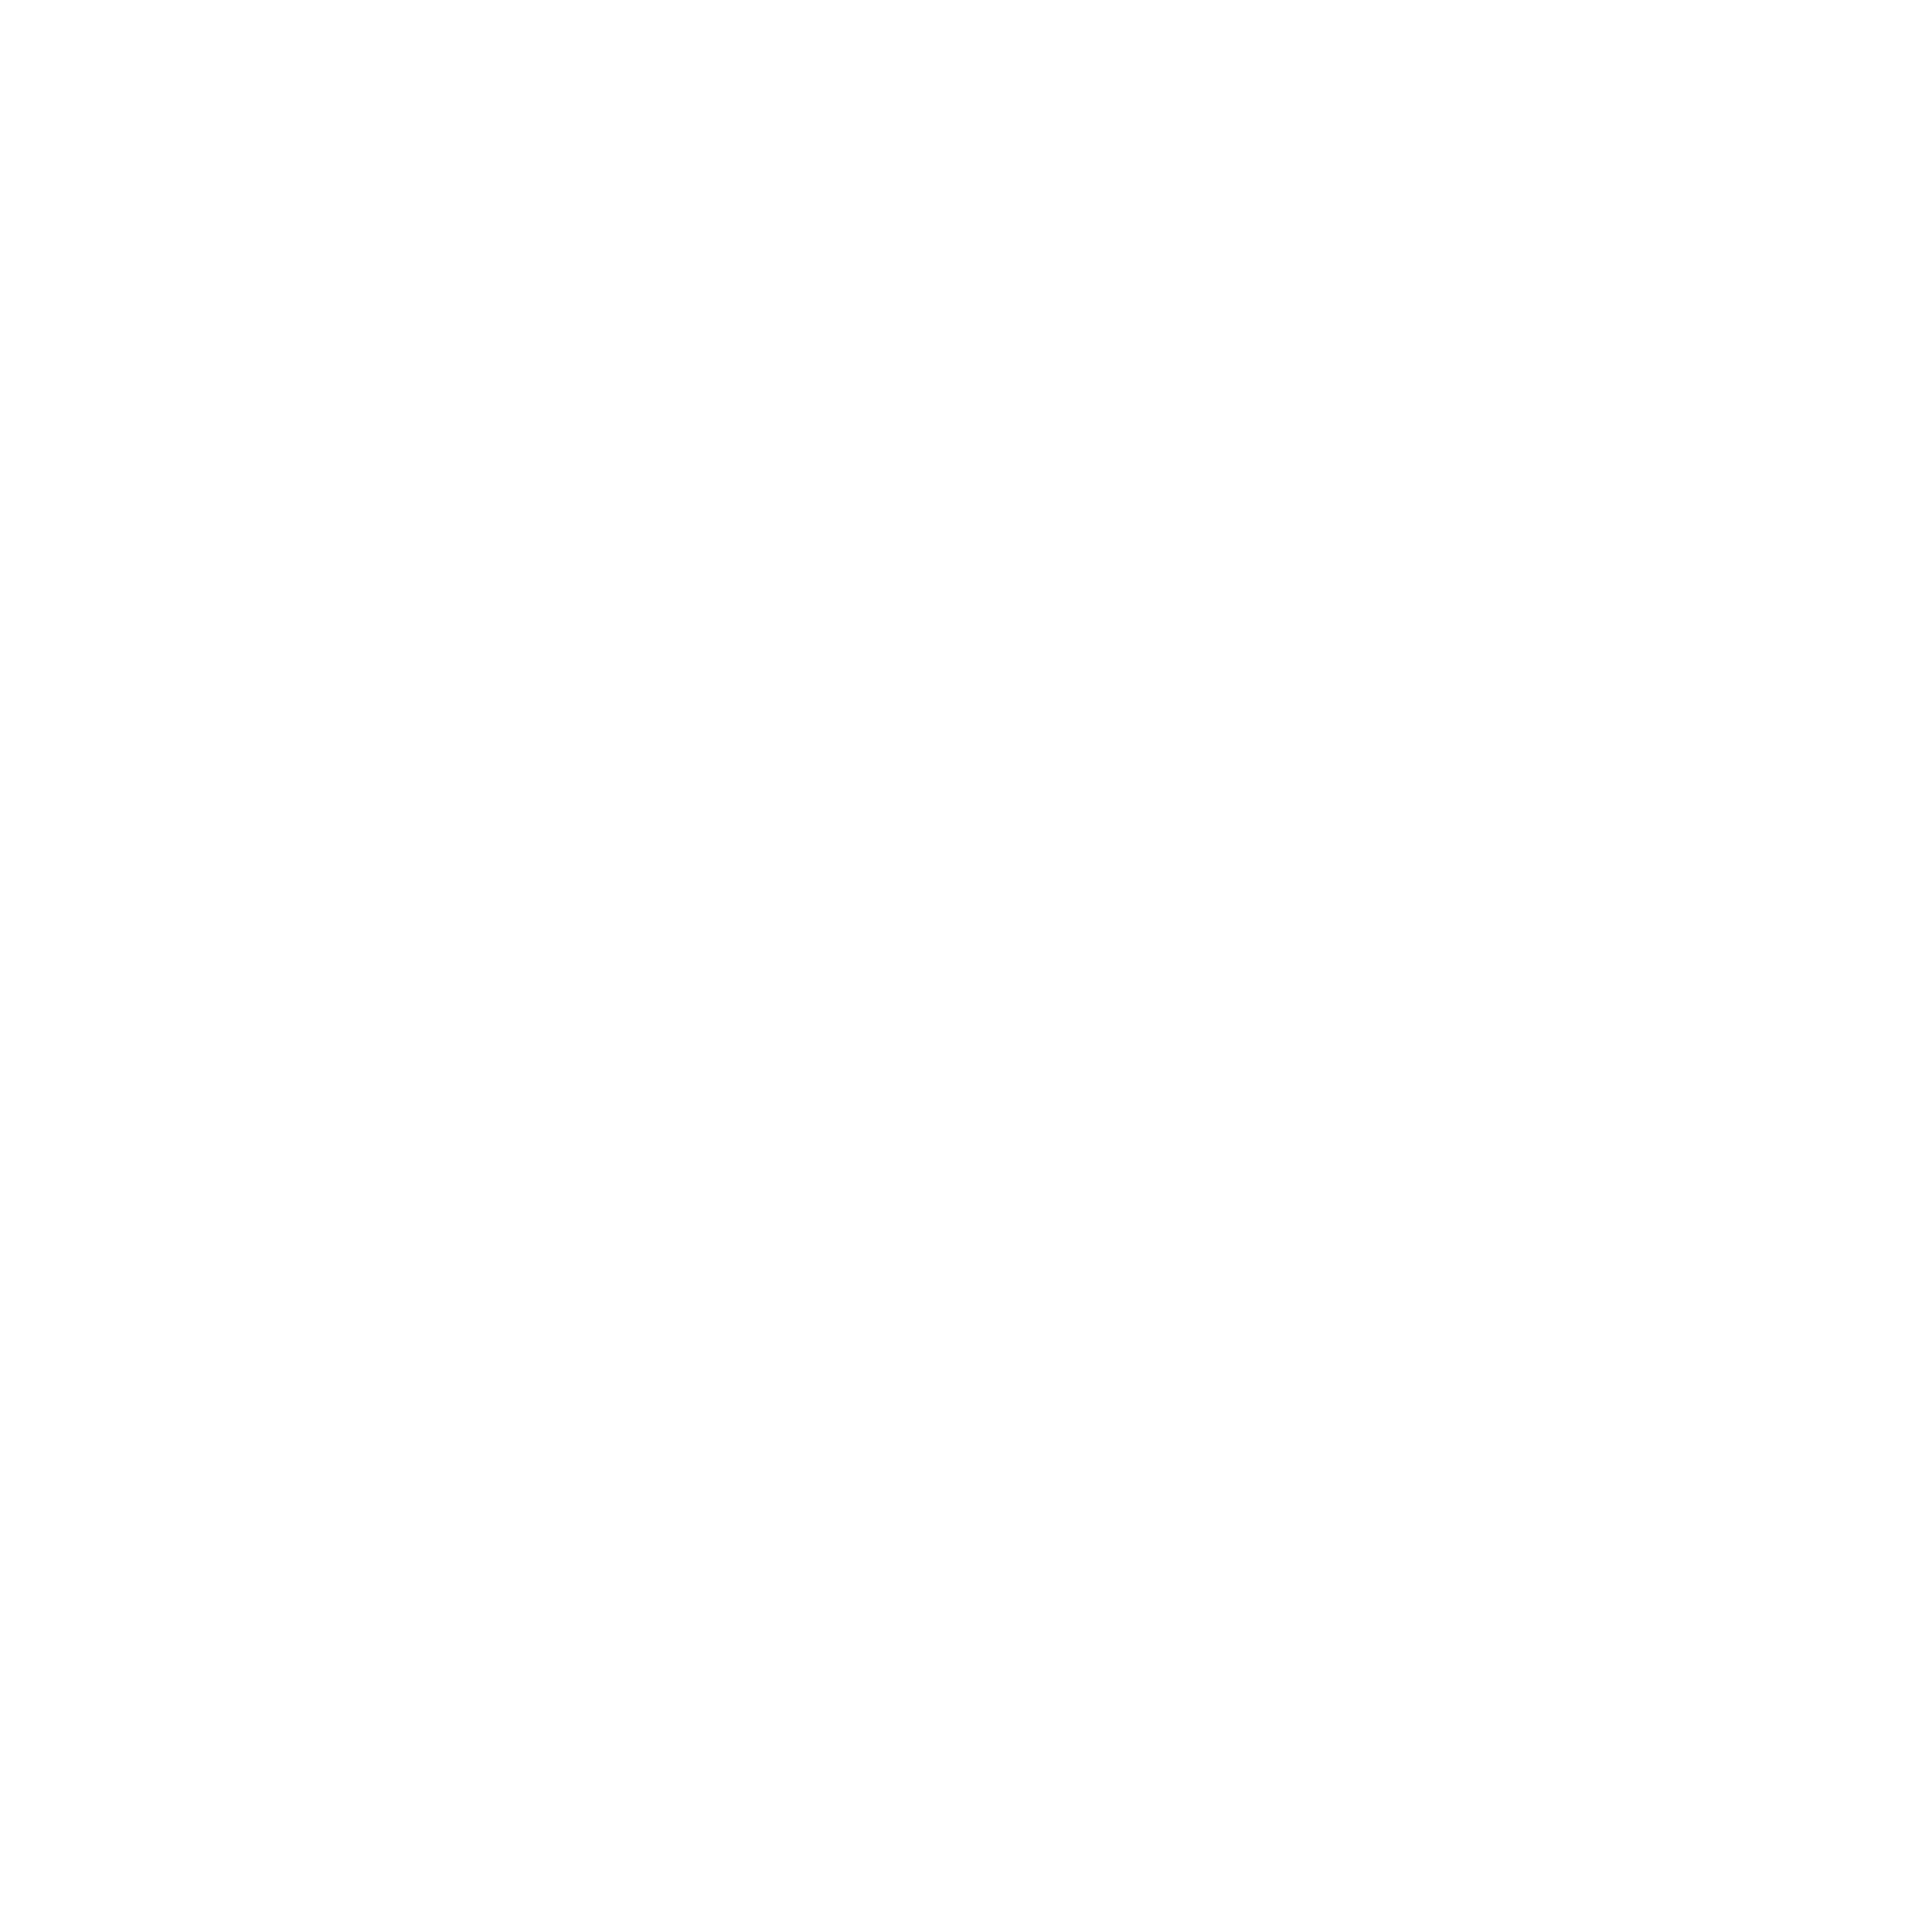 ThebridX